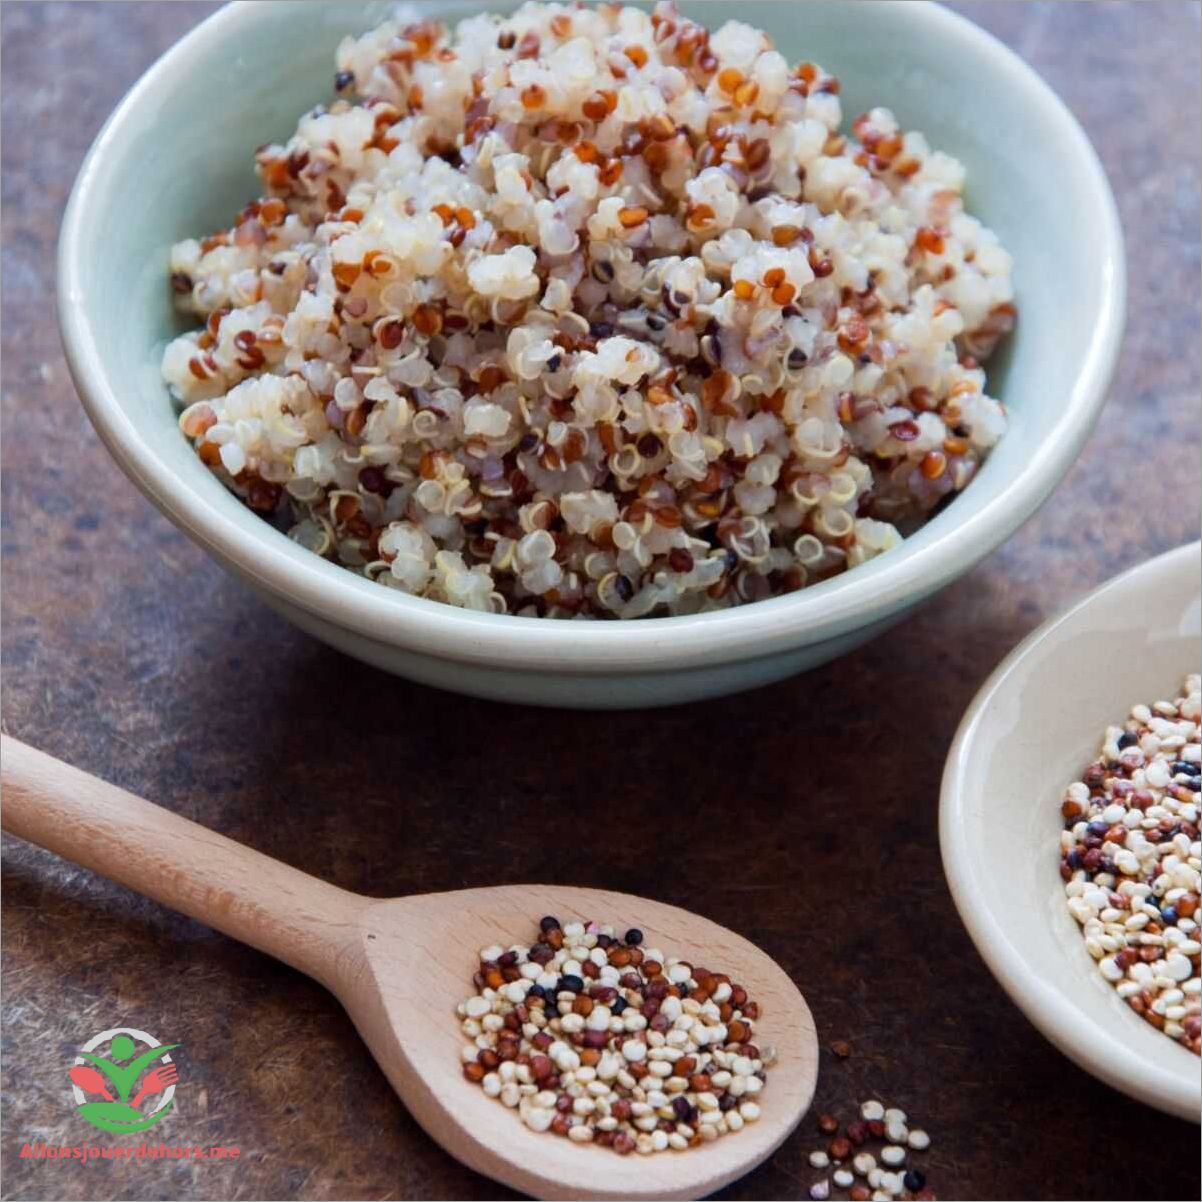 Choisir le quinoa de qualité